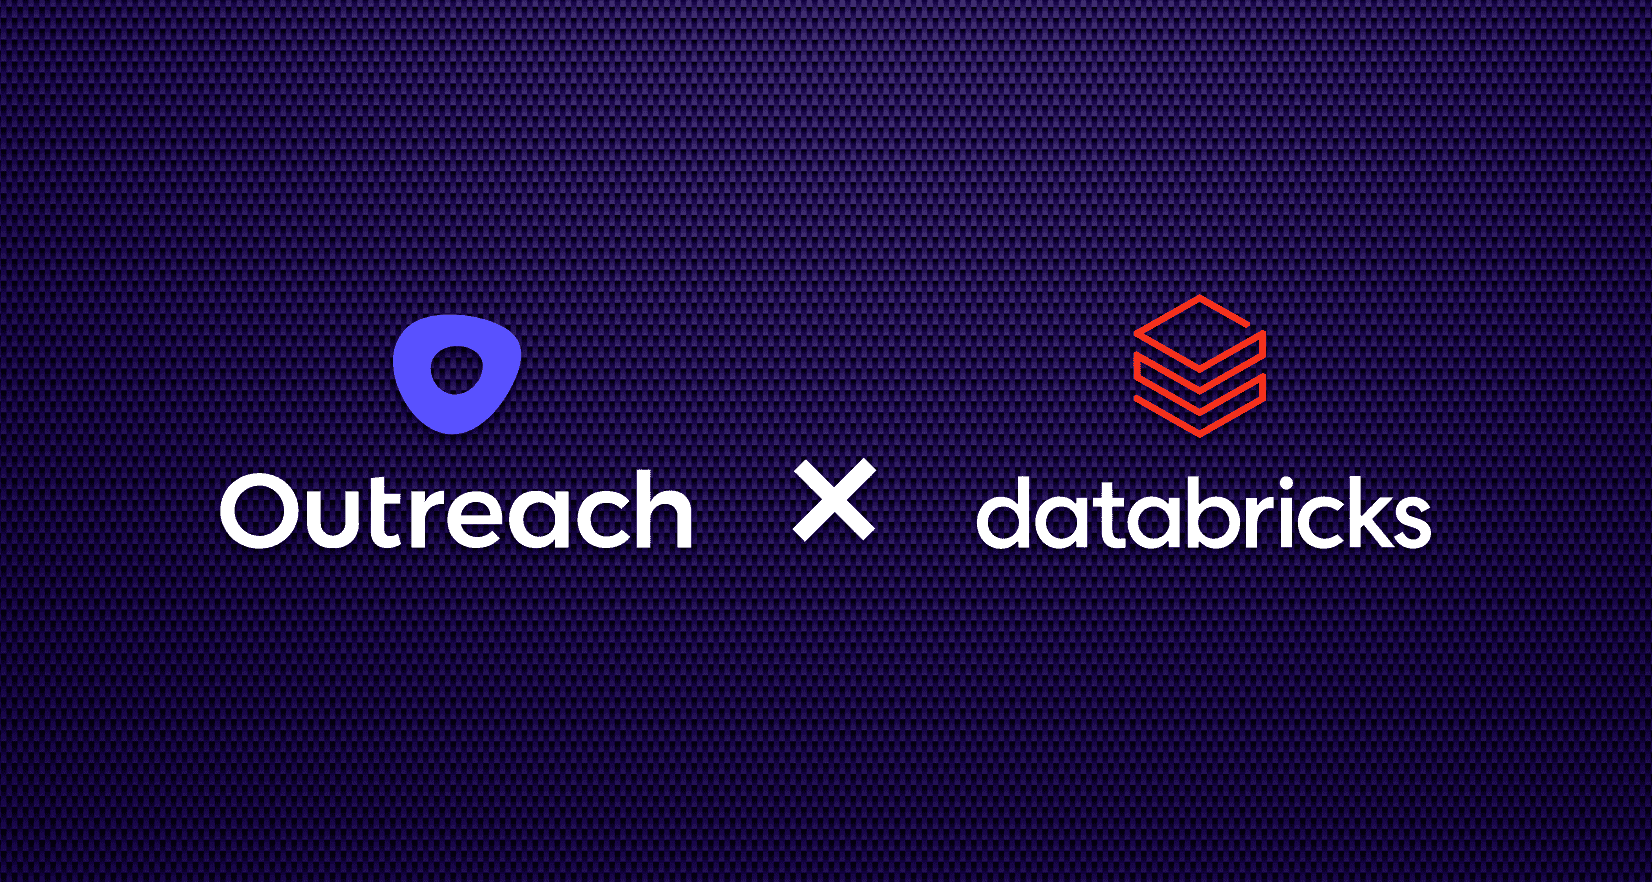 The Outreach logo and the Databricks logo